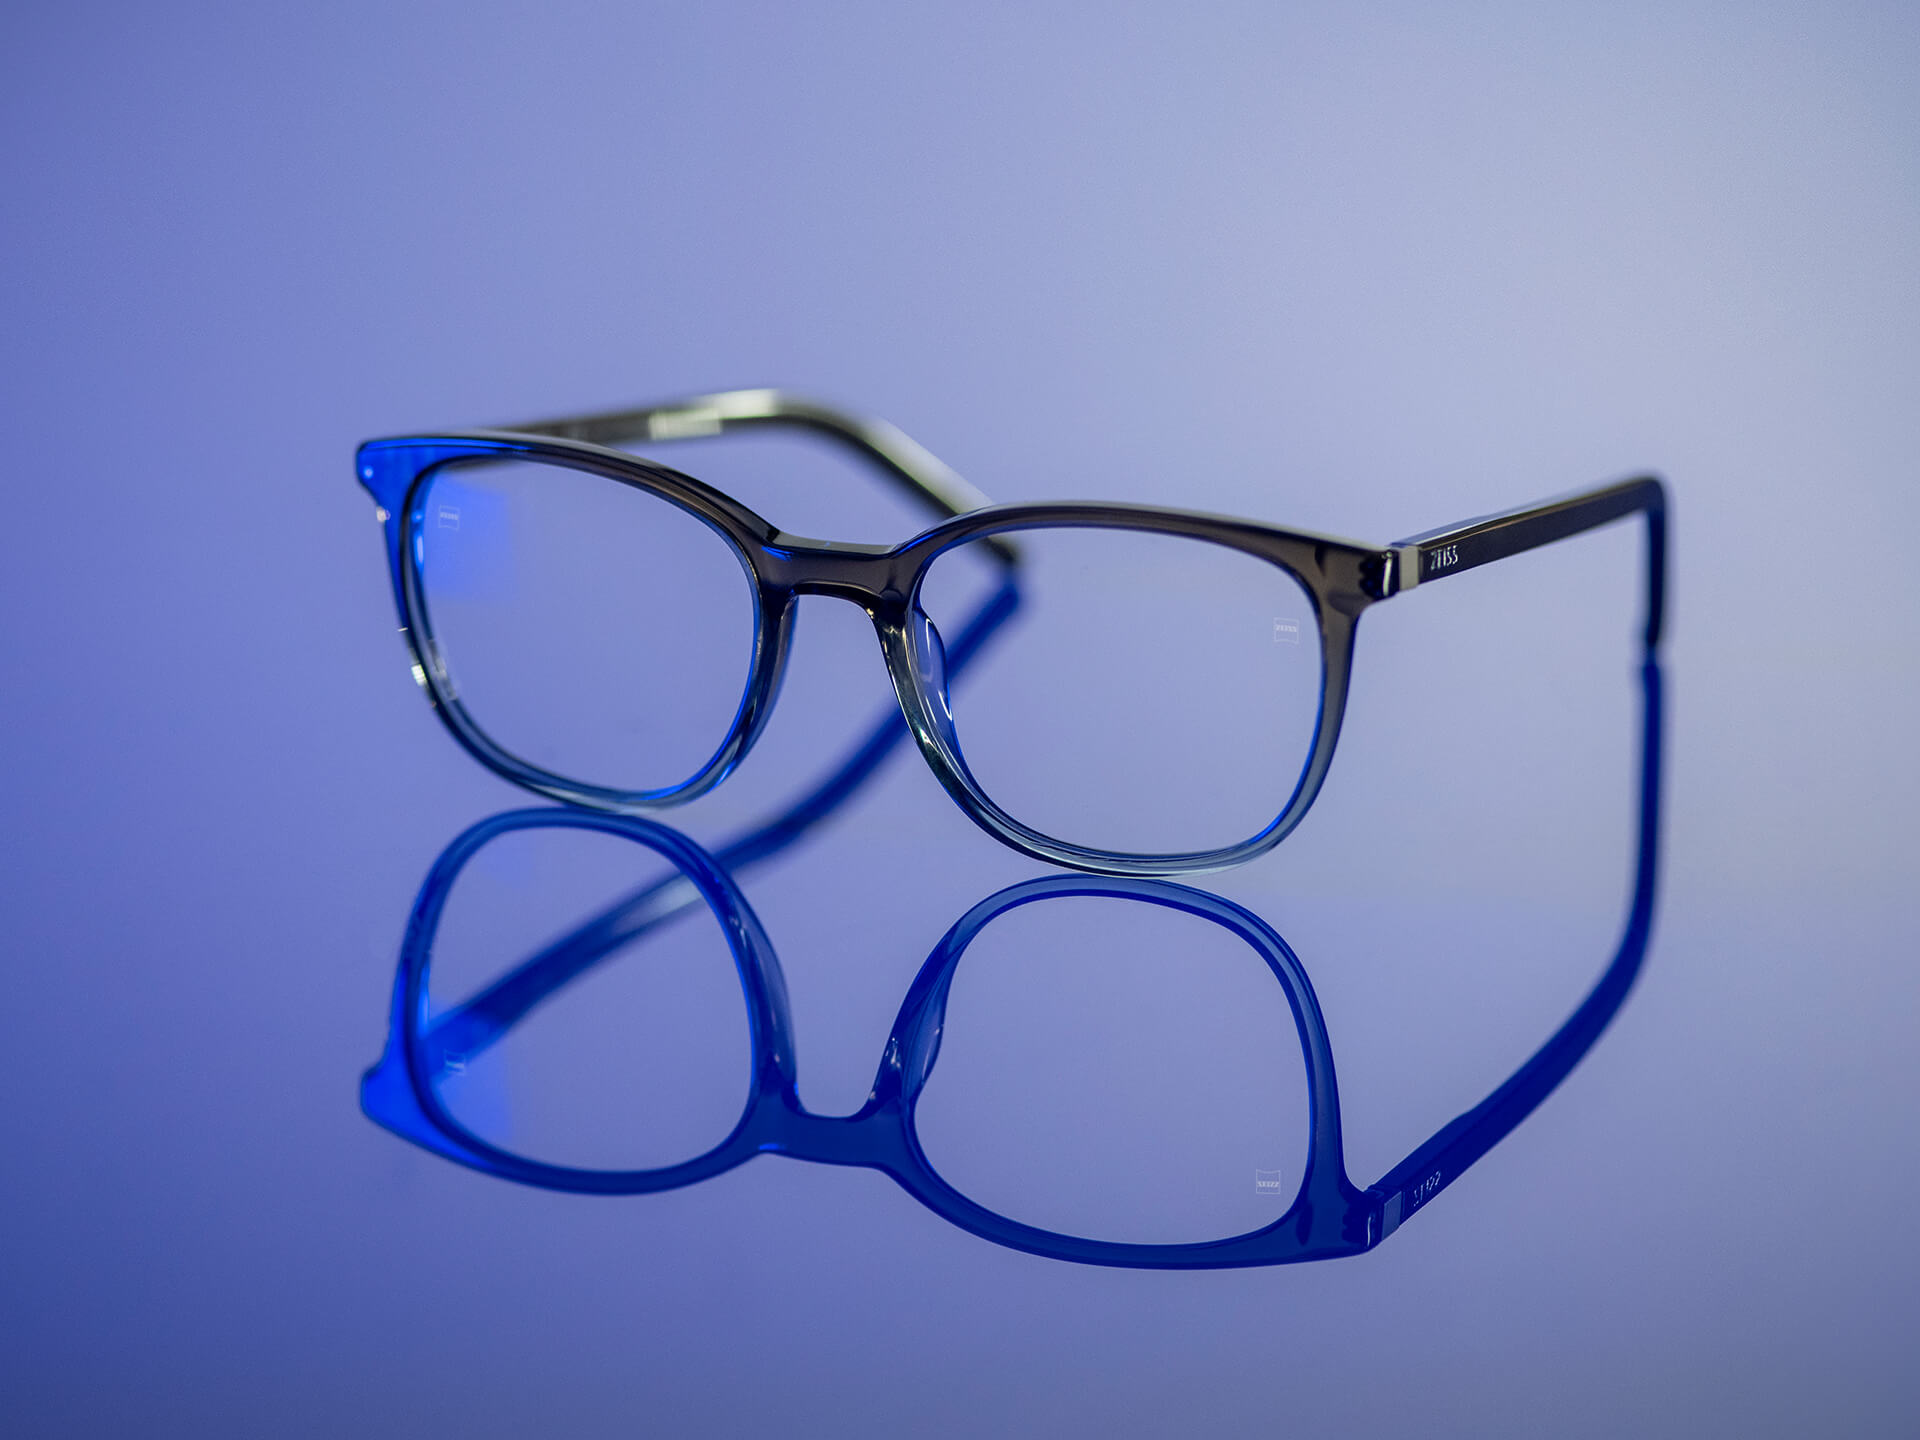 Brillenglazen die zichtbaar zijn in blauwachtig licht en ZEISS brillenglazen met BlueGuard brillenglasmateriaal hebben. Alleen een zeer beperkte blauwachtige reflectie is zichtbaar op de brillenglazen.